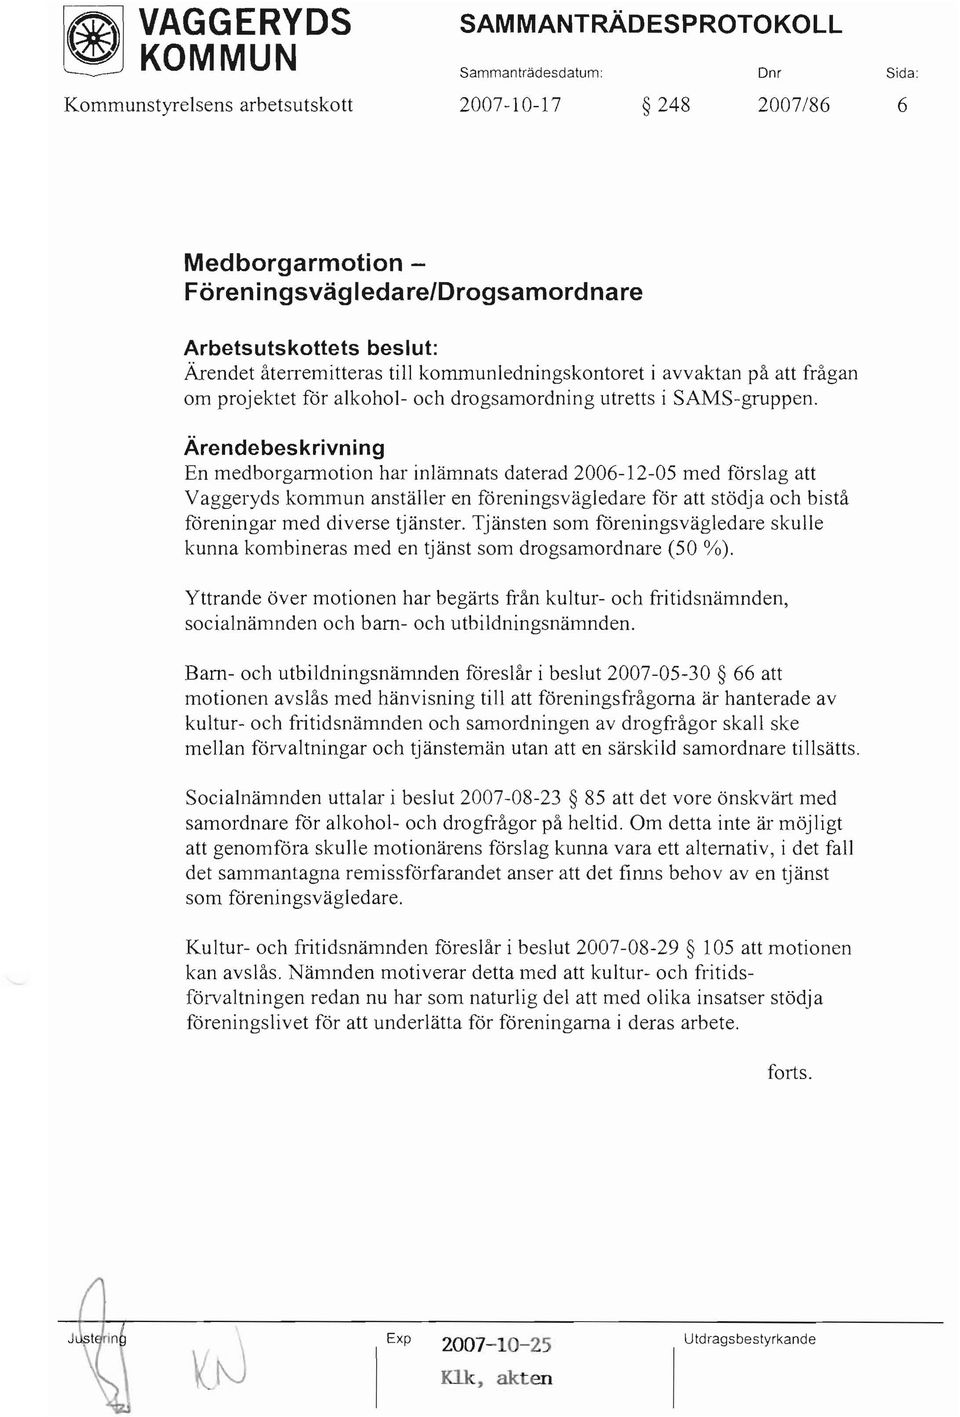 En medborgarmotion har inlämnats daterad 2006-12-05 med förslag att Vaggeryds kommun anställer en föreningsvägledare för att stödja och bistå föreningar med diverse tjänster.